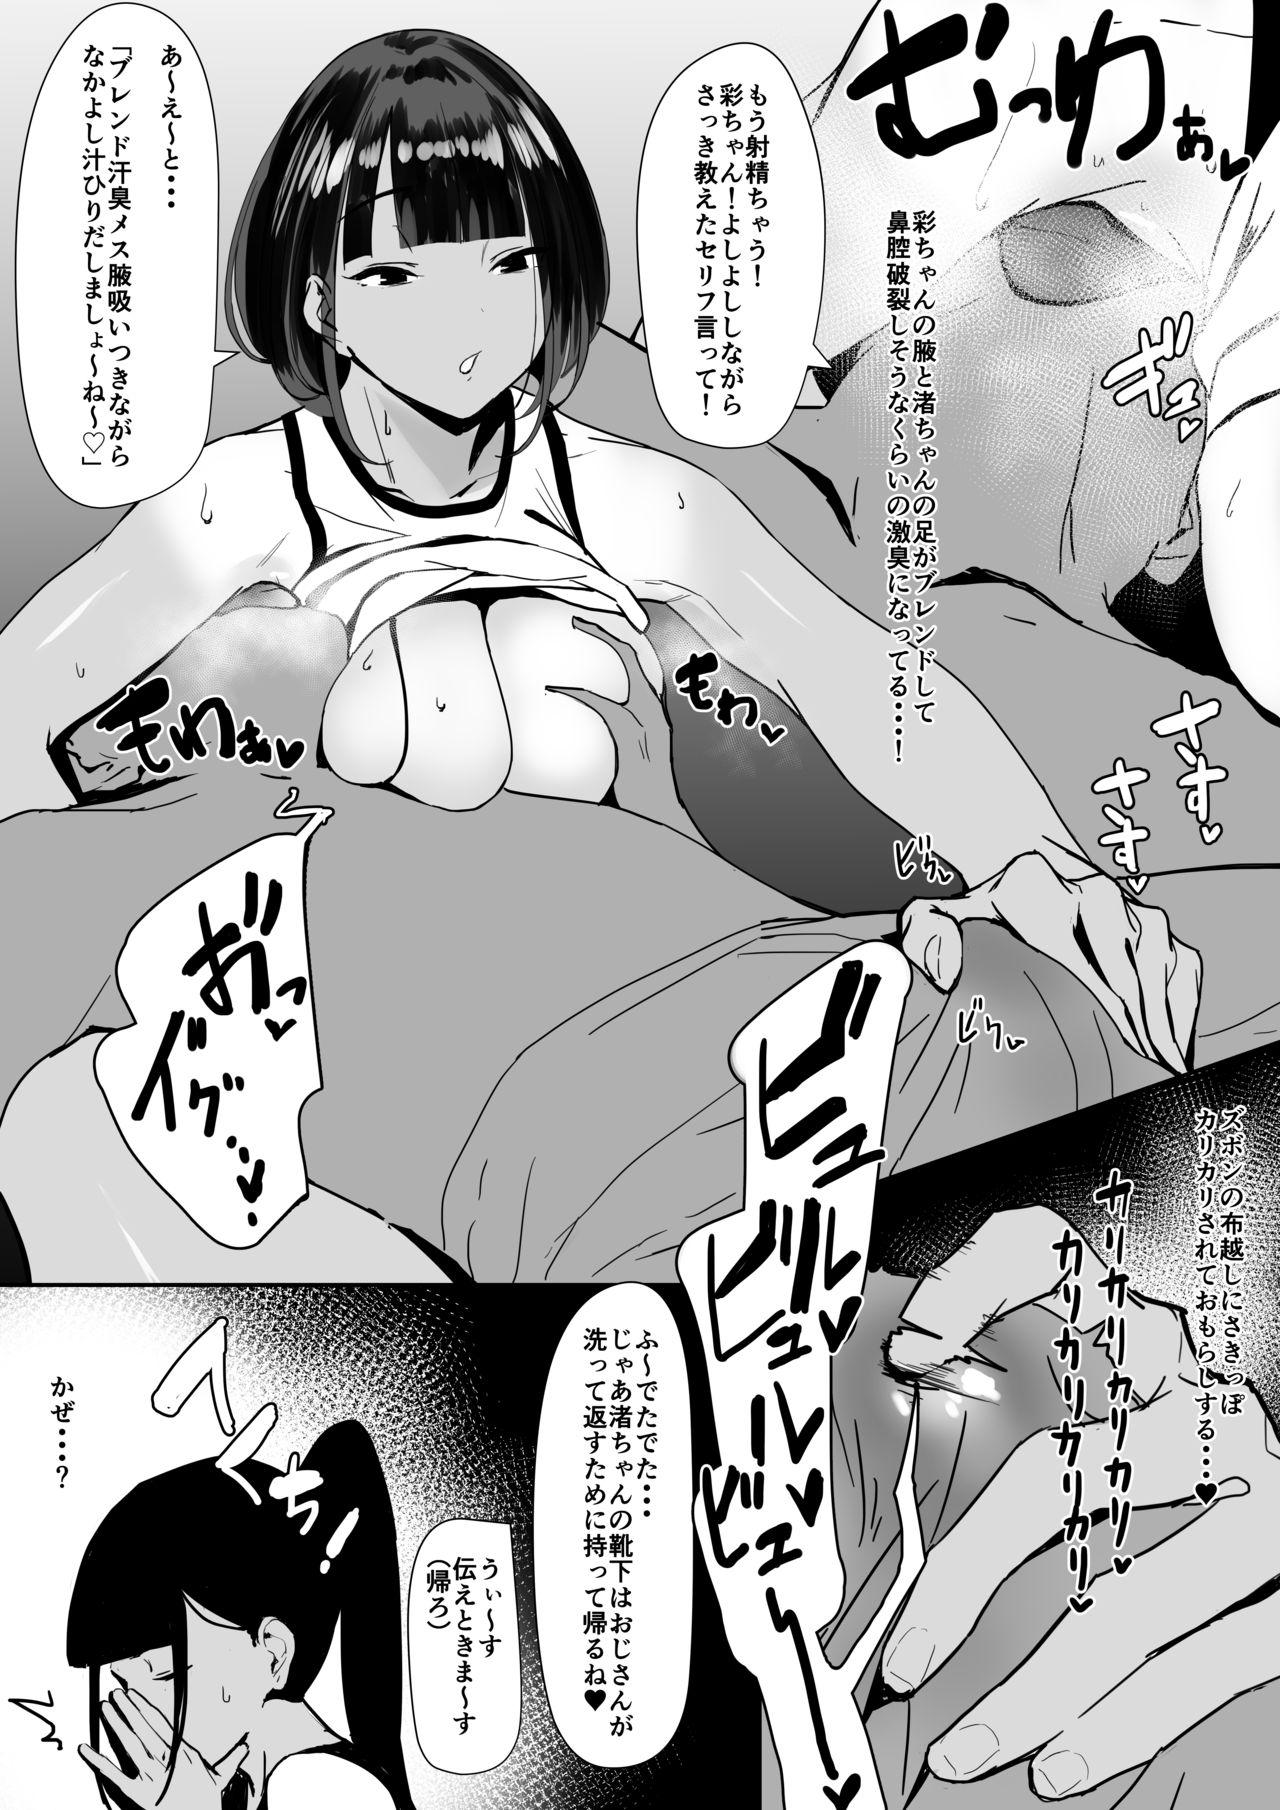 Vecina Rikujobu chan - Original Sentando - Page 8